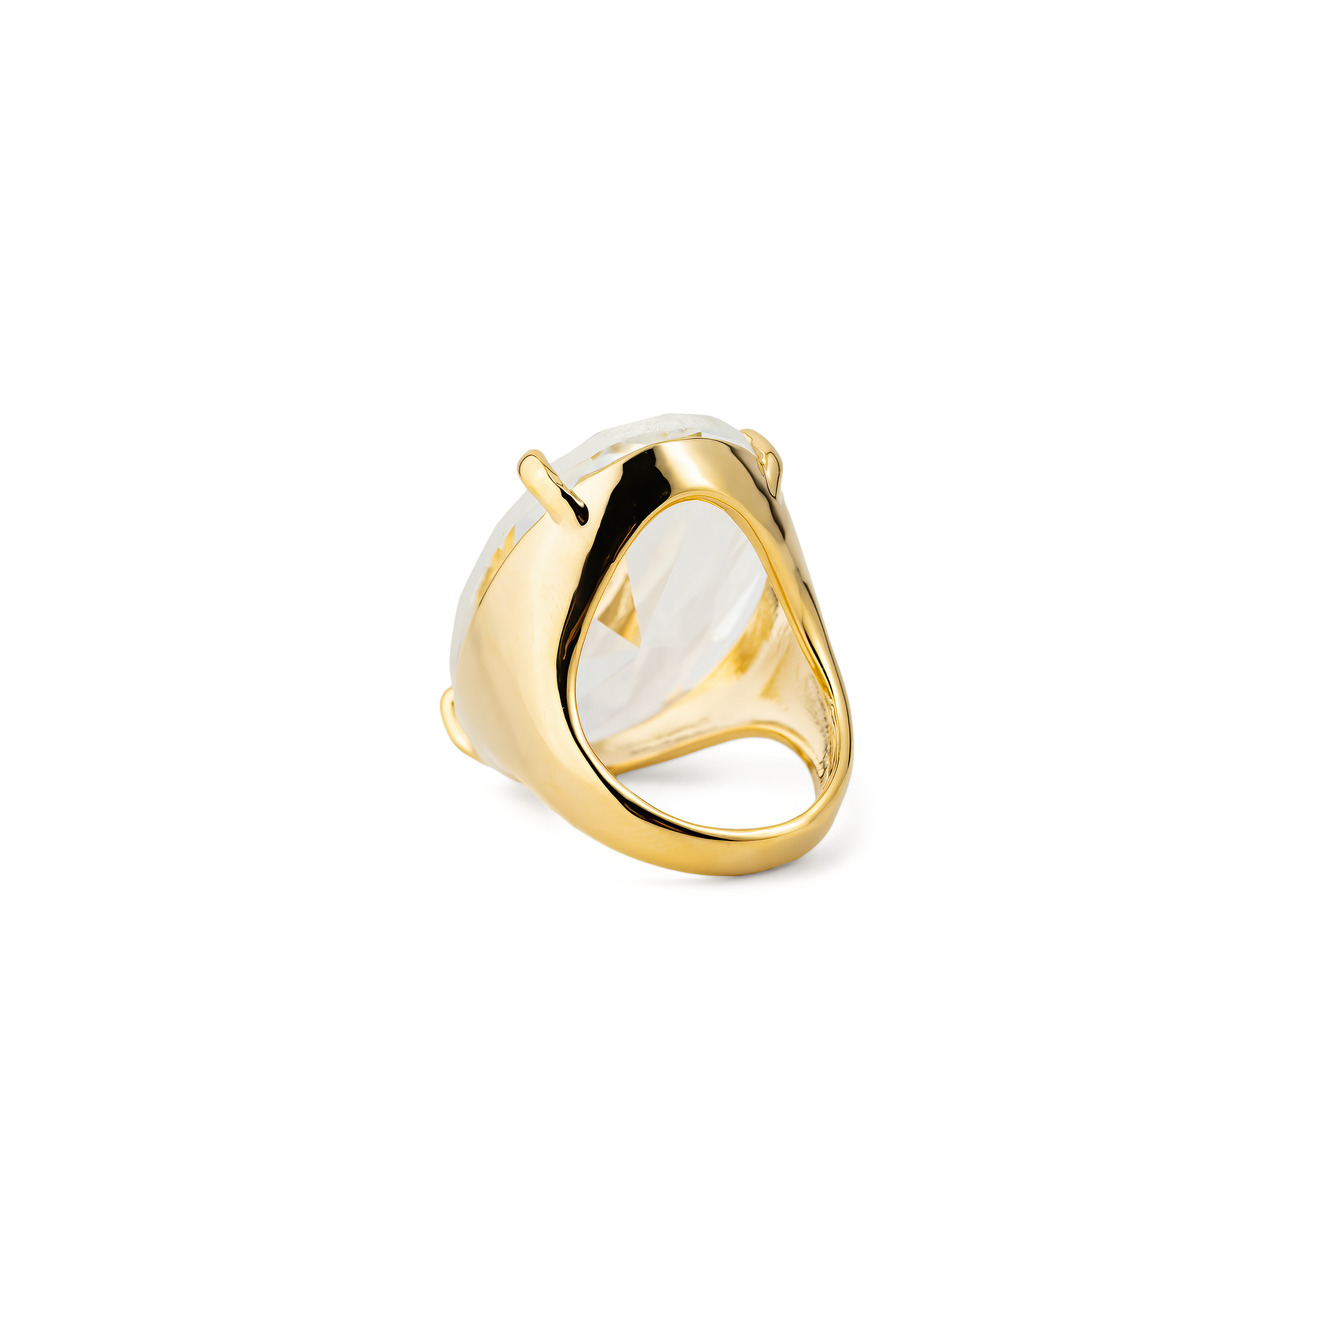 Herald Percy Золотистое кольцо с овальным кристаллом lisa smith золотистое кольцо с лабрадоритом в фантазийной огранке